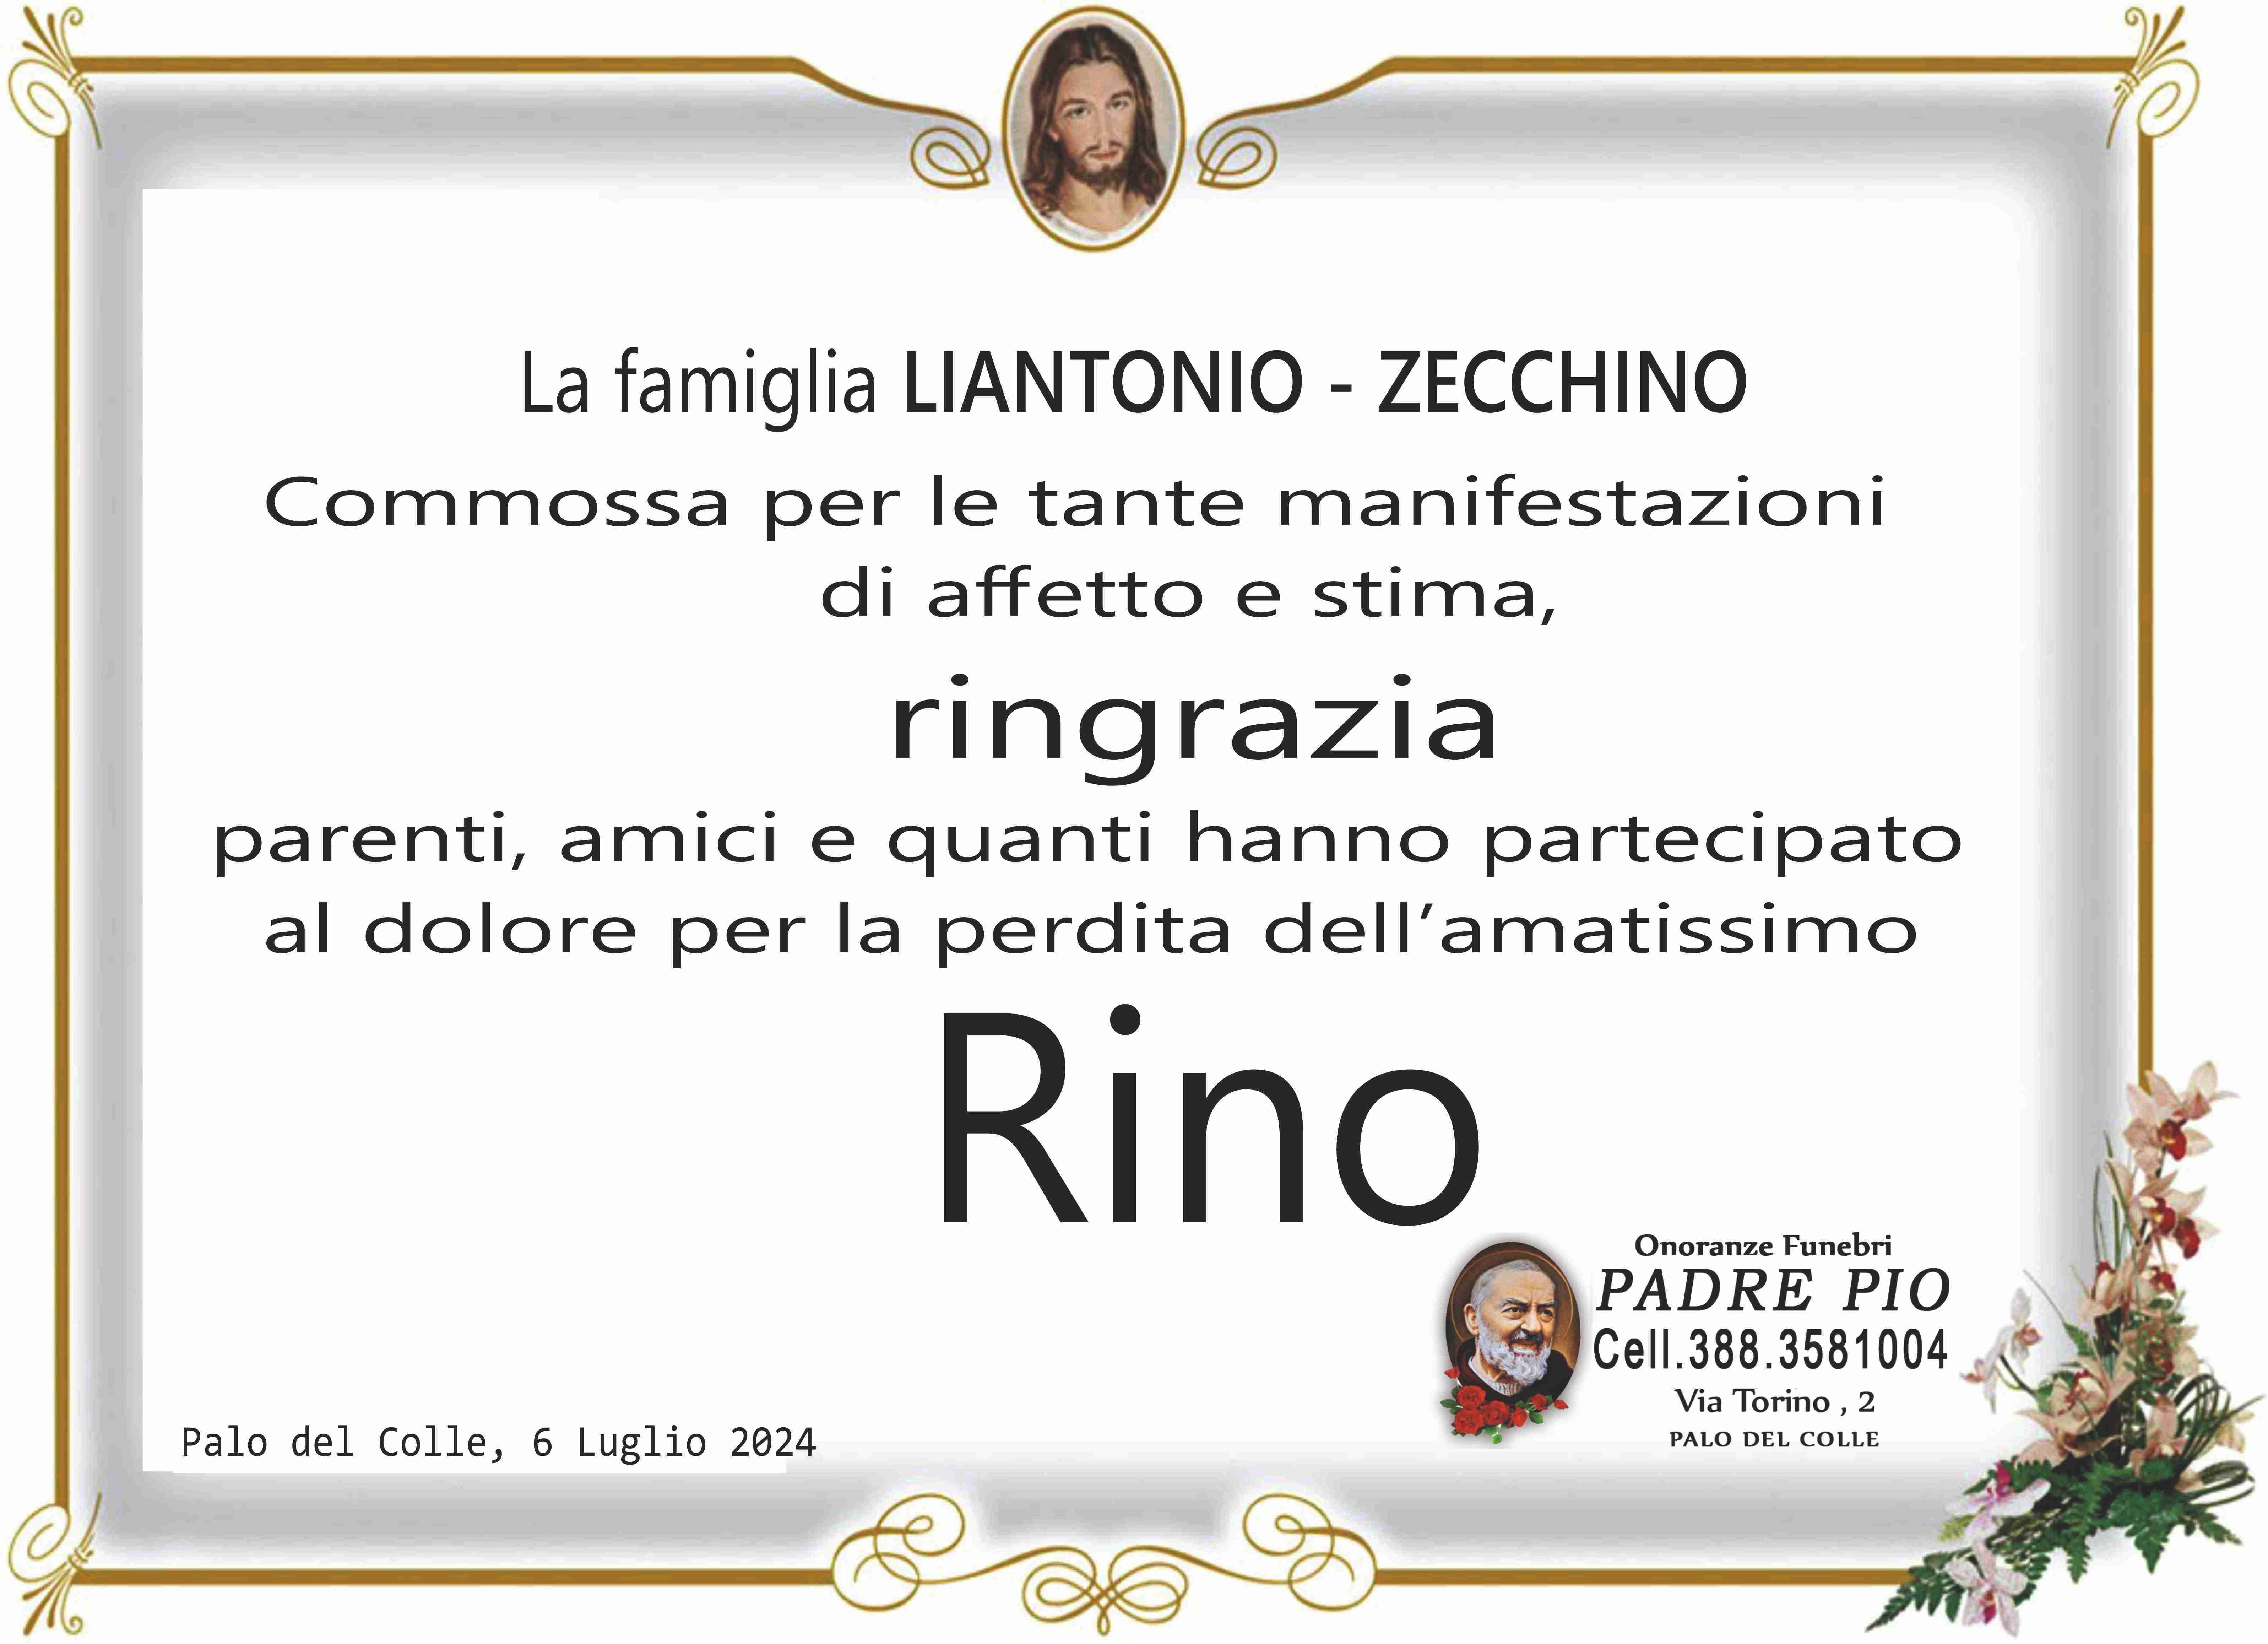 Rino Liantonio